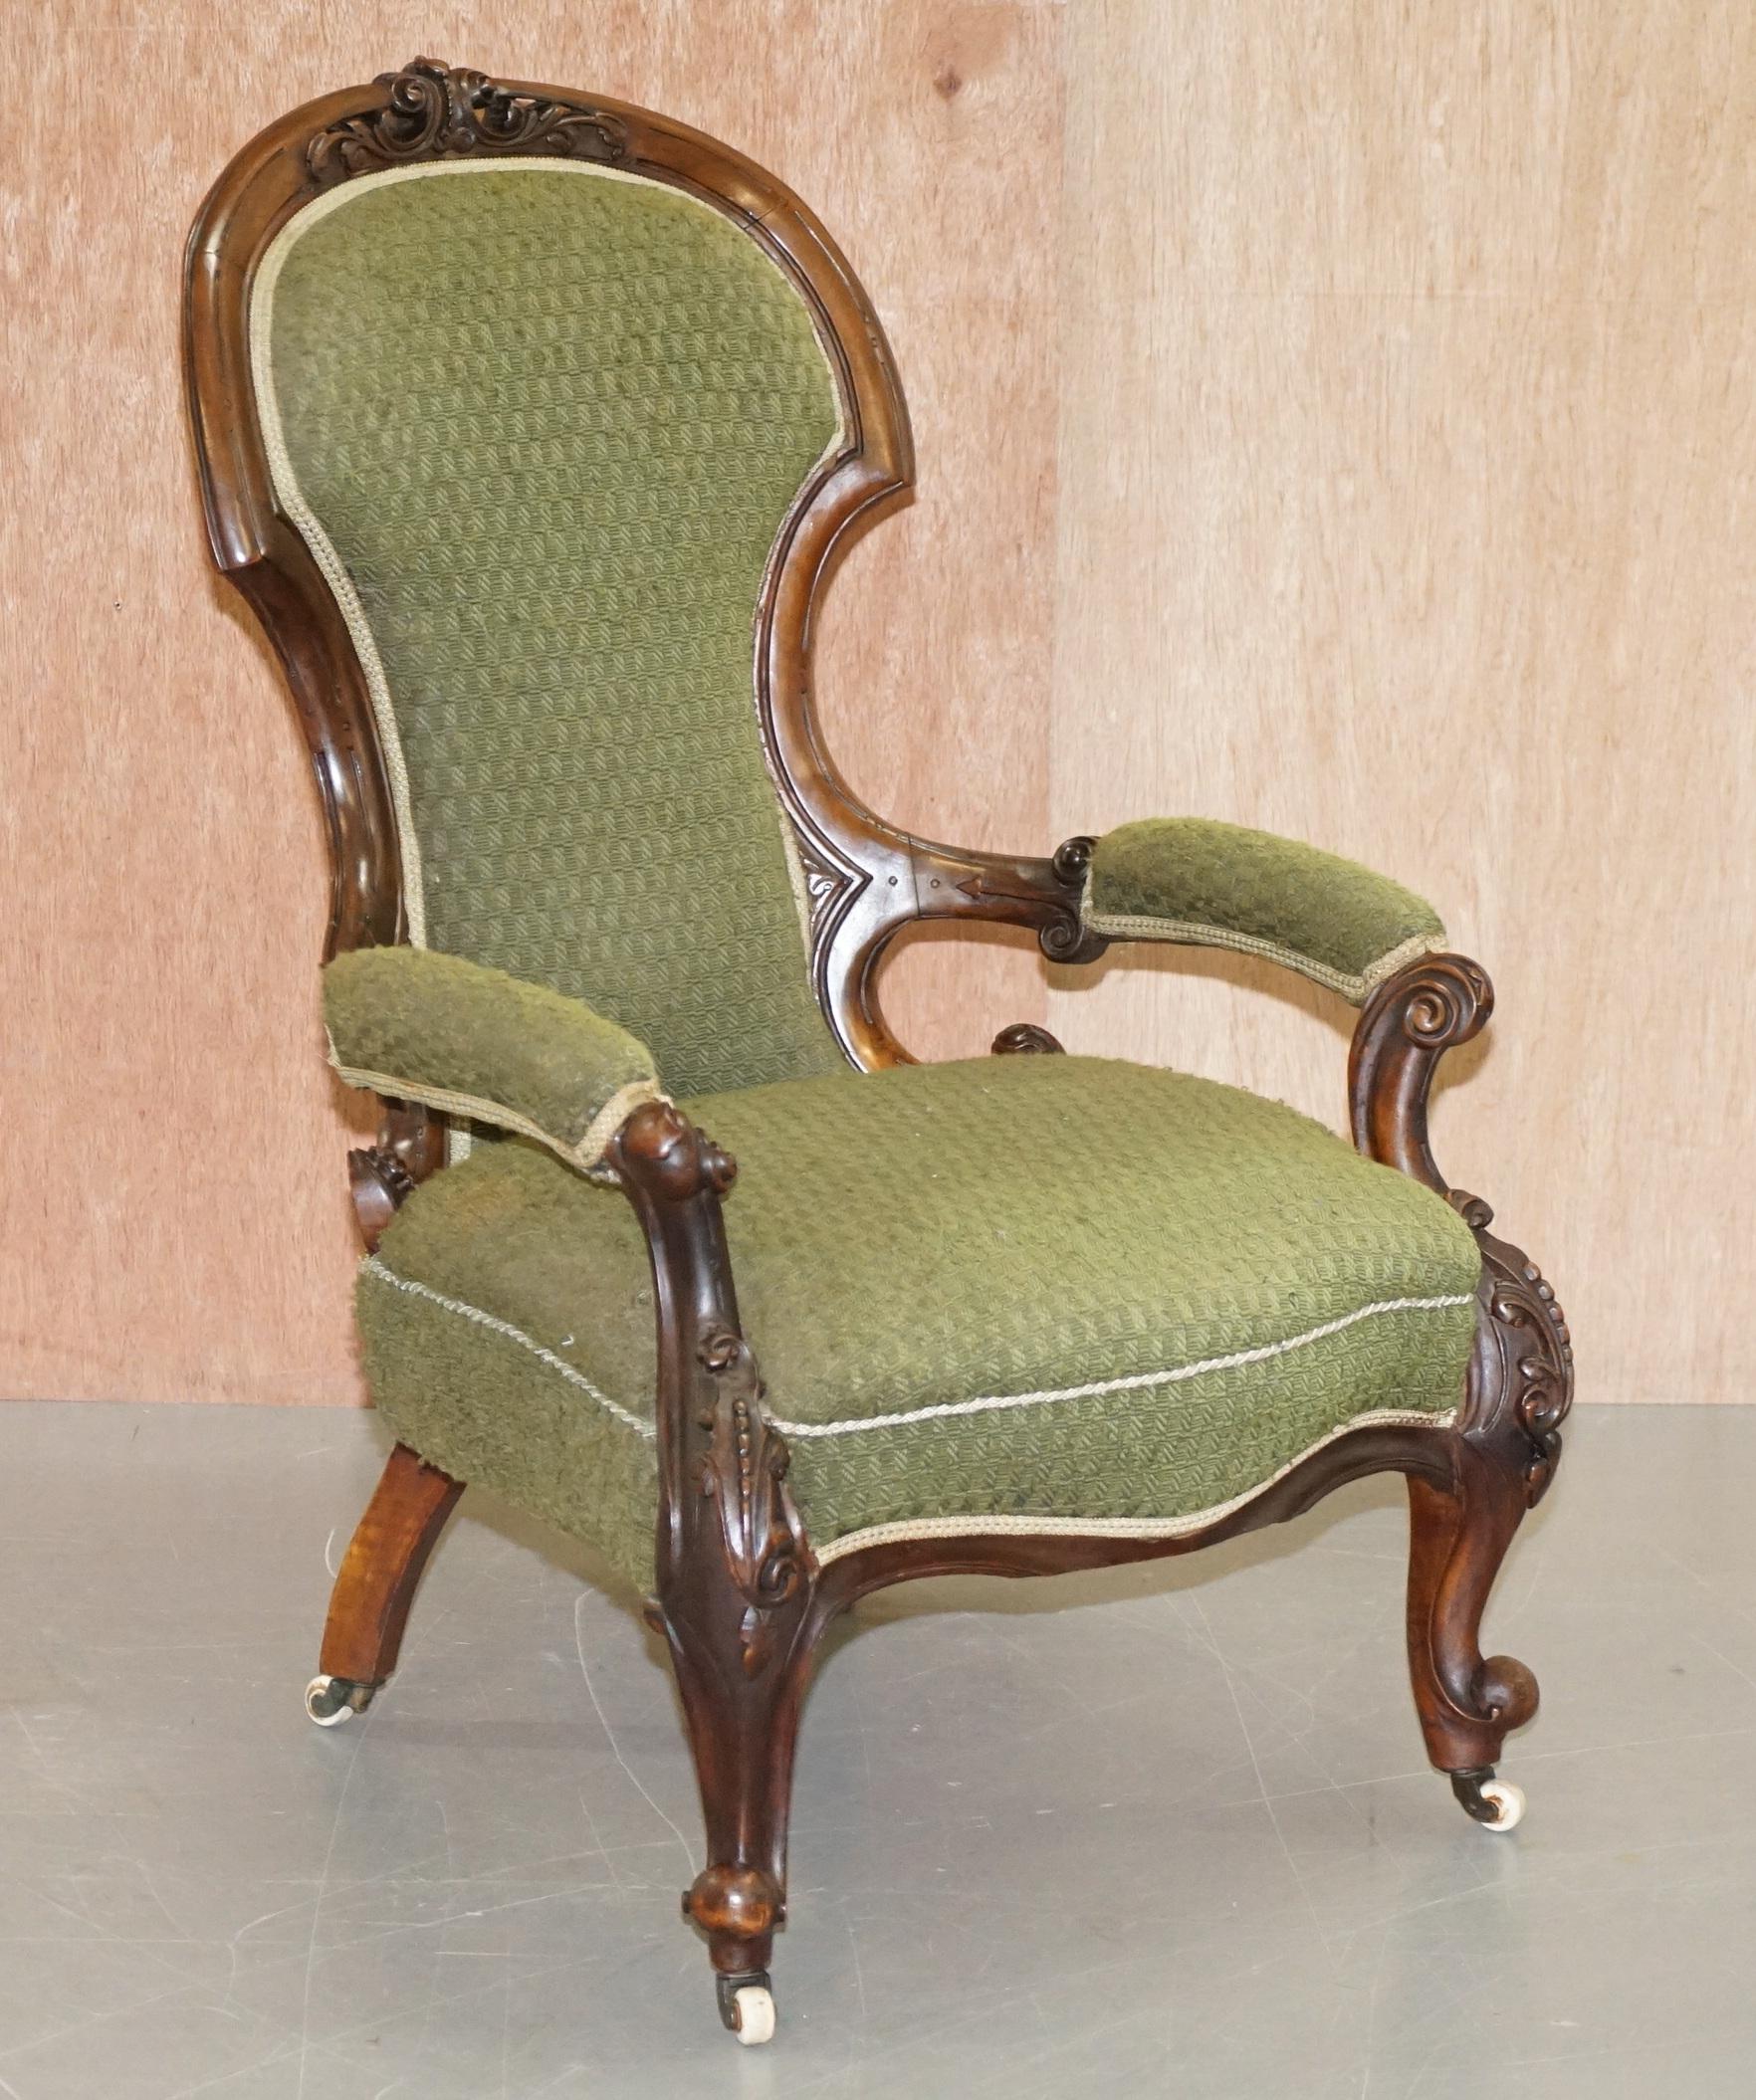 Wir freuen uns, diesen schönen originalen viktorianischen, handgeschnitzten Mahagoni-Lesesesessel mit Schaukasten zum Verkauf anbieten zu können 

Ein gut aussehender, gut gearbeiteter und dekorativer, gerahmter Sessel. Gerahmte Ausstellungsstücke